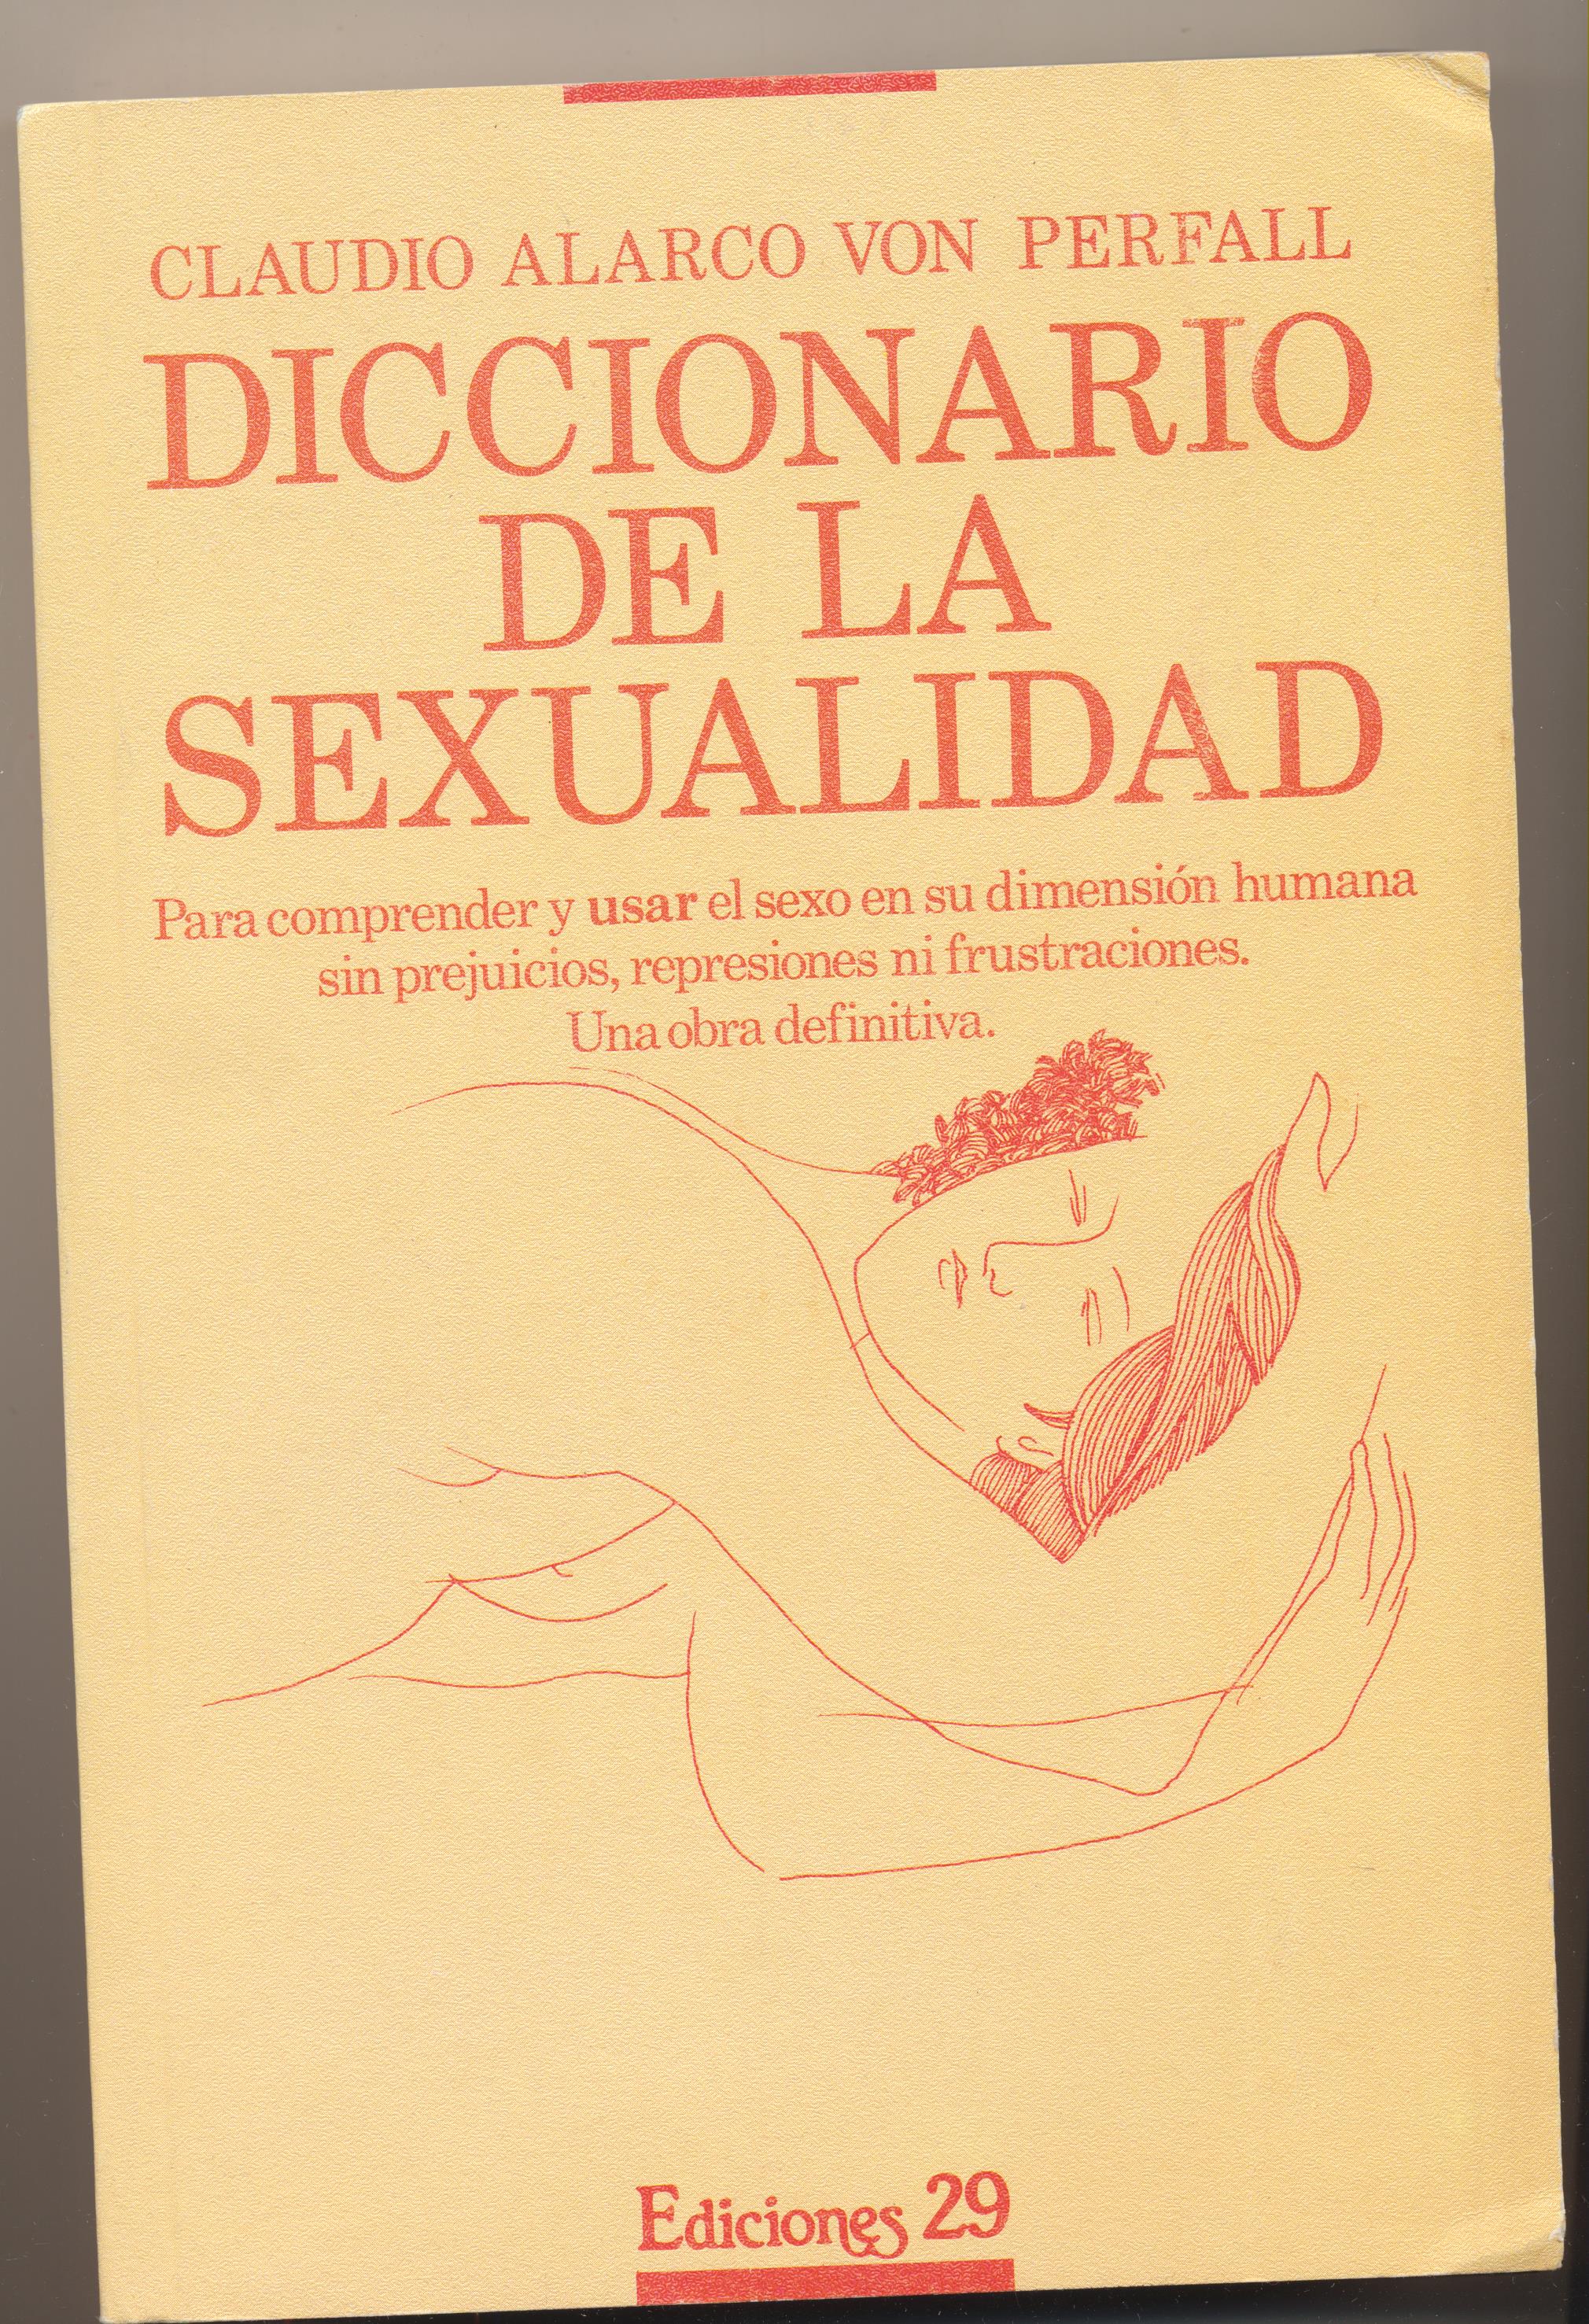 Claudio Alarco von Perfall. Diccionario de la Sexualidad. Ediciones 29 1987. SIN USAR